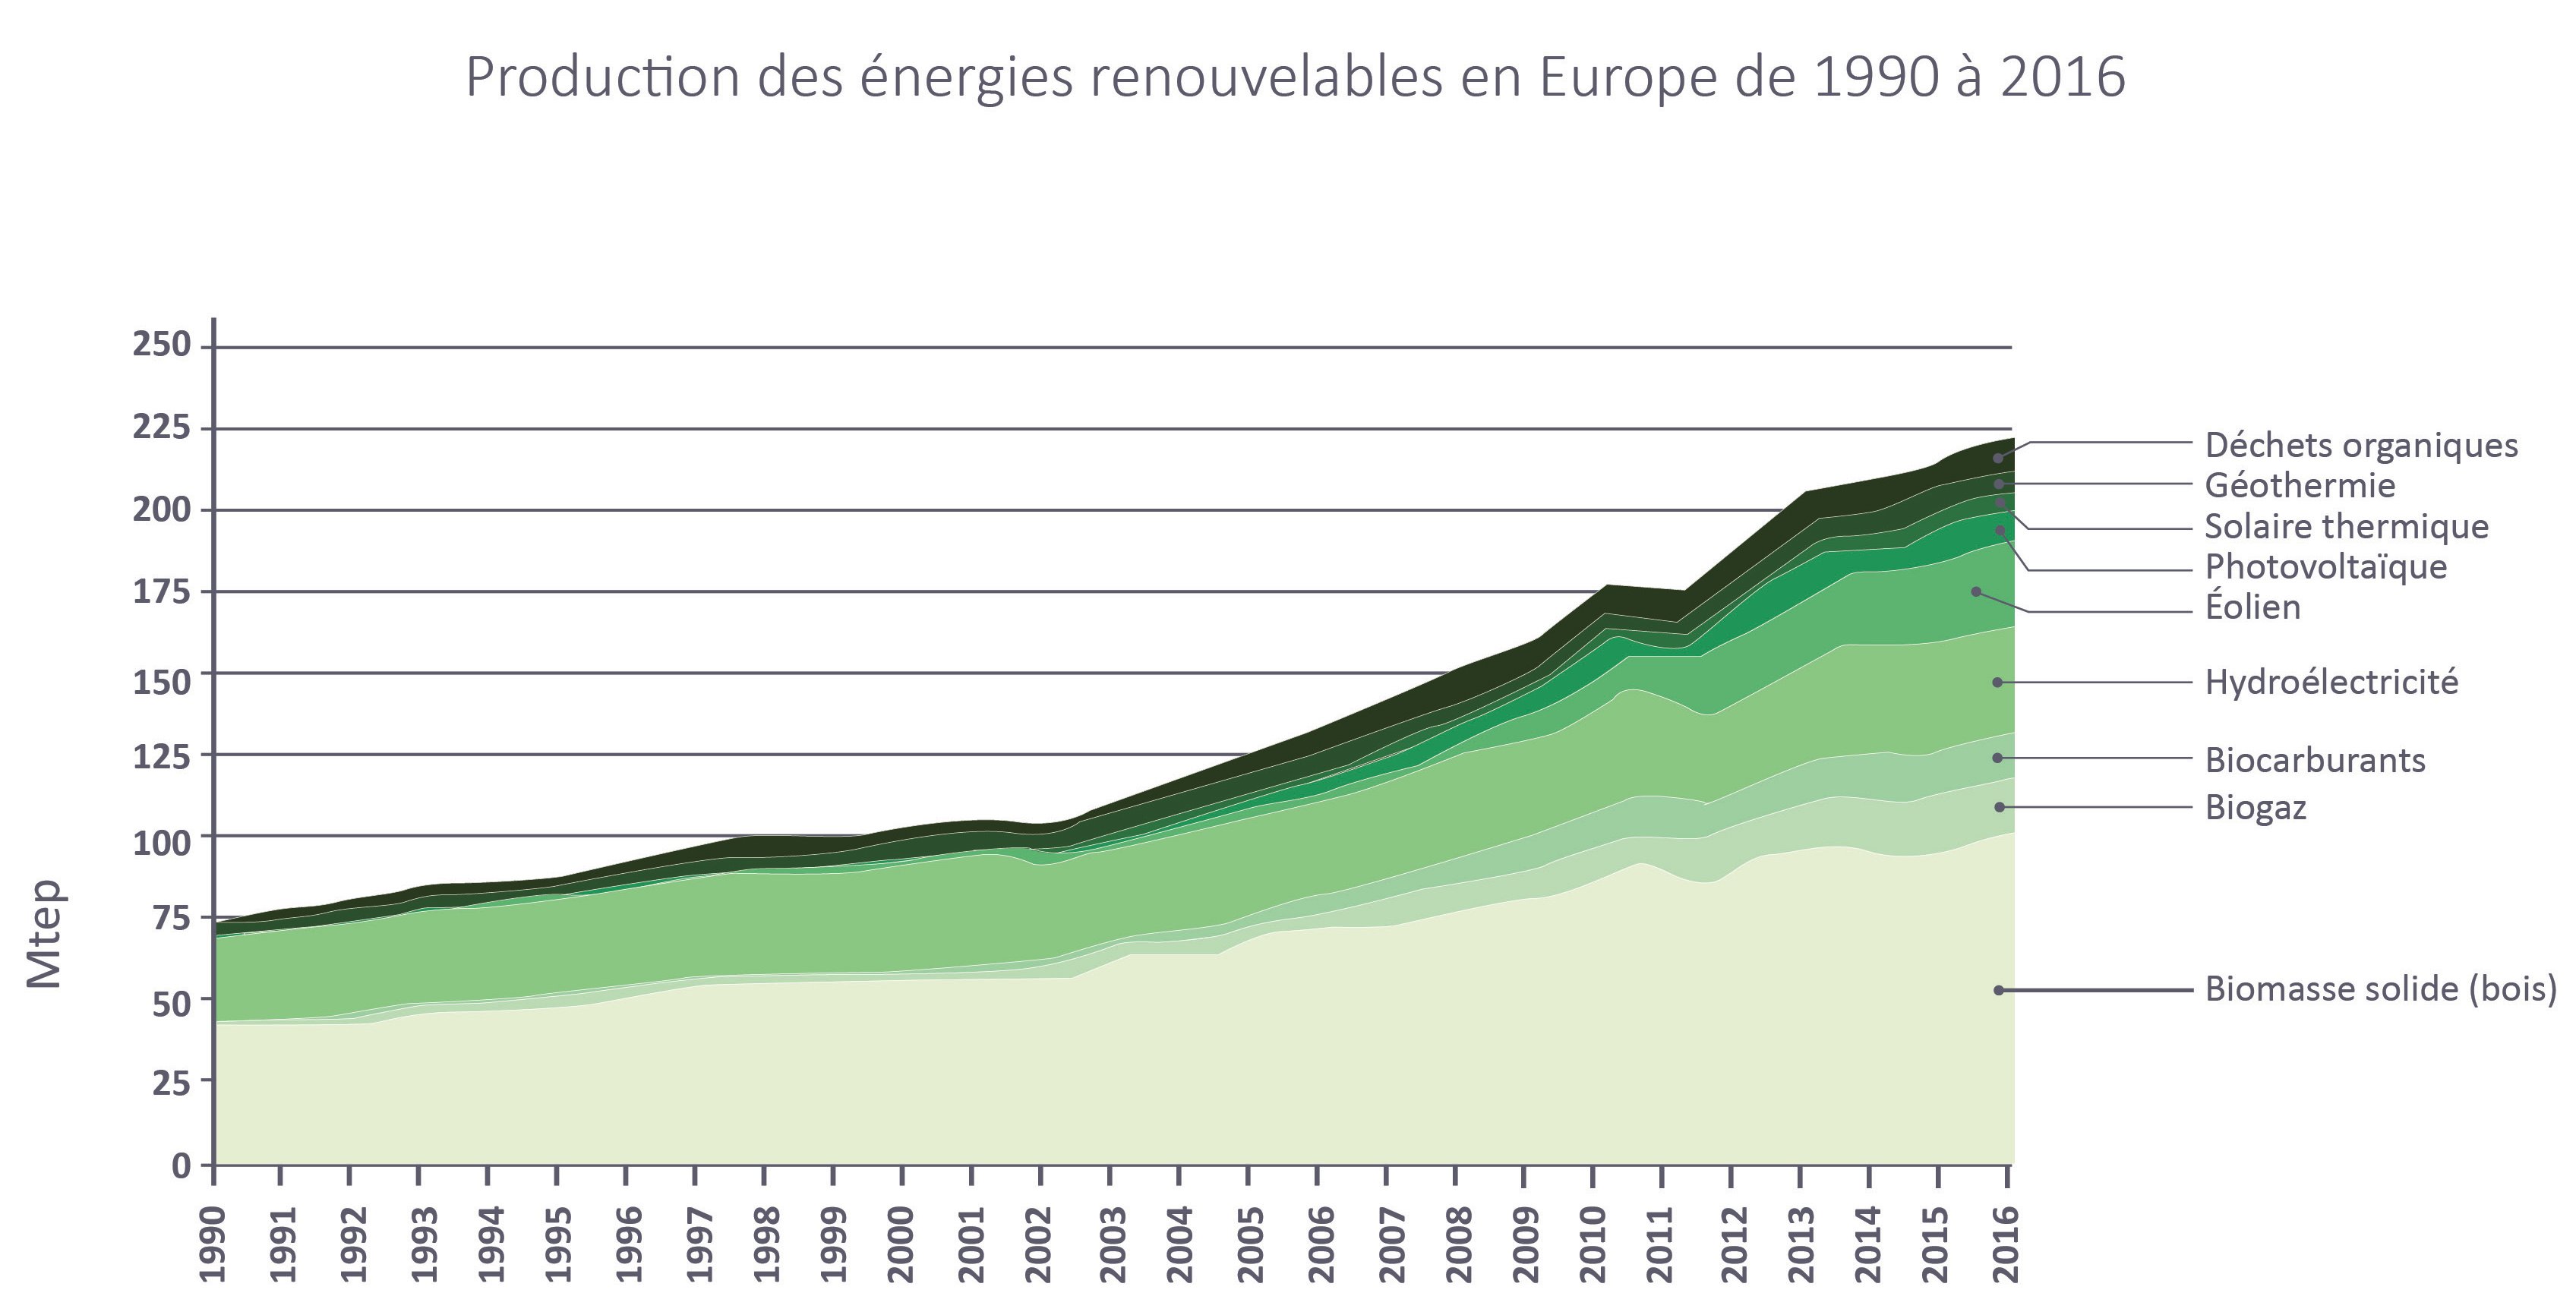 Tableau sur la production des énergies renouvelables en Europe de 1990 à 2016 